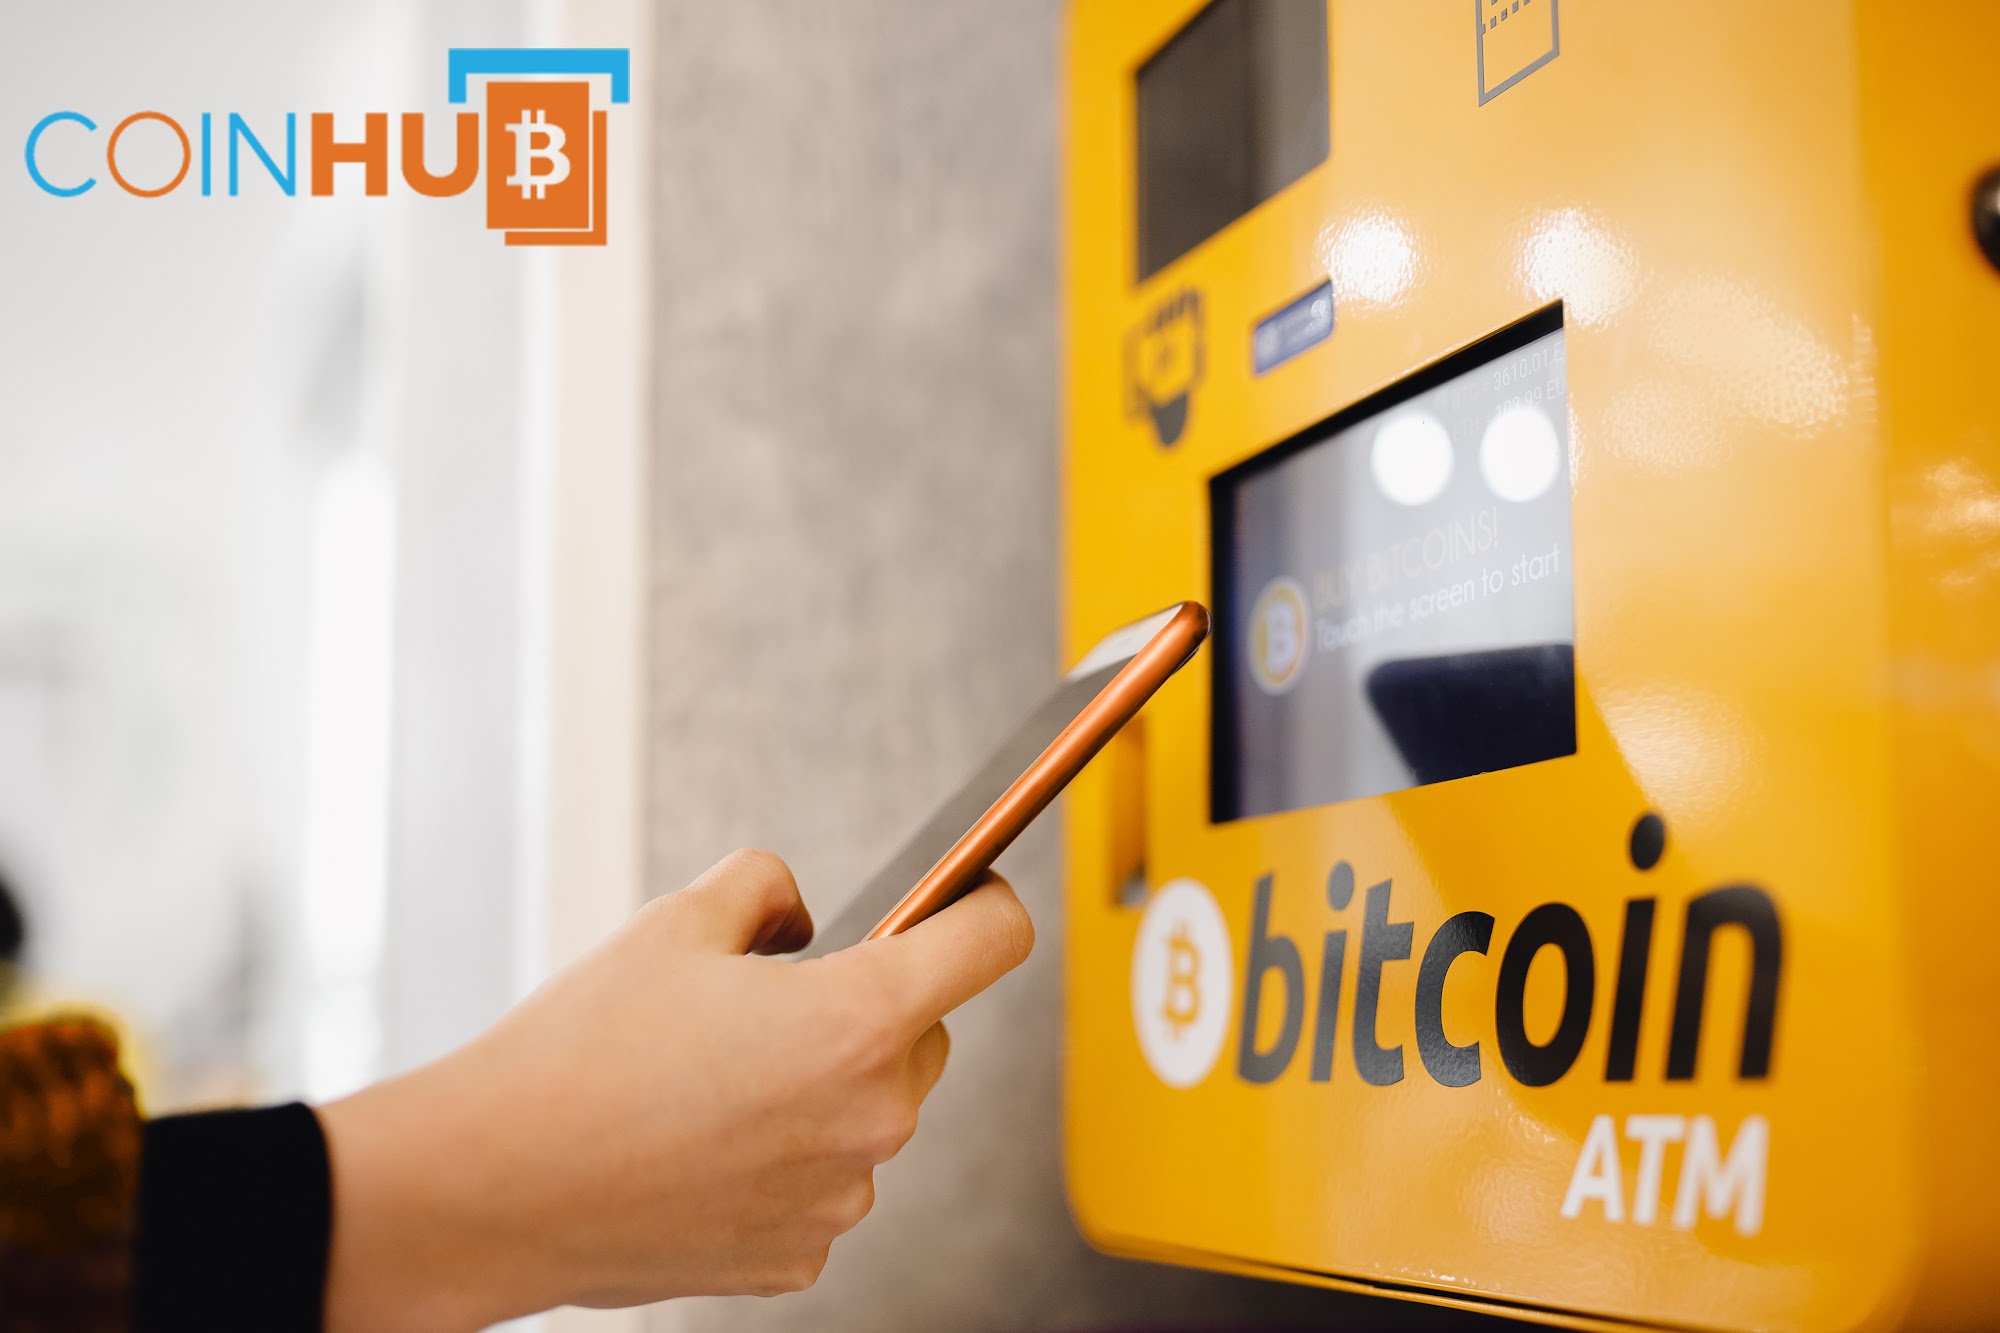 Bitcoin ATM Savannah - Coinhub